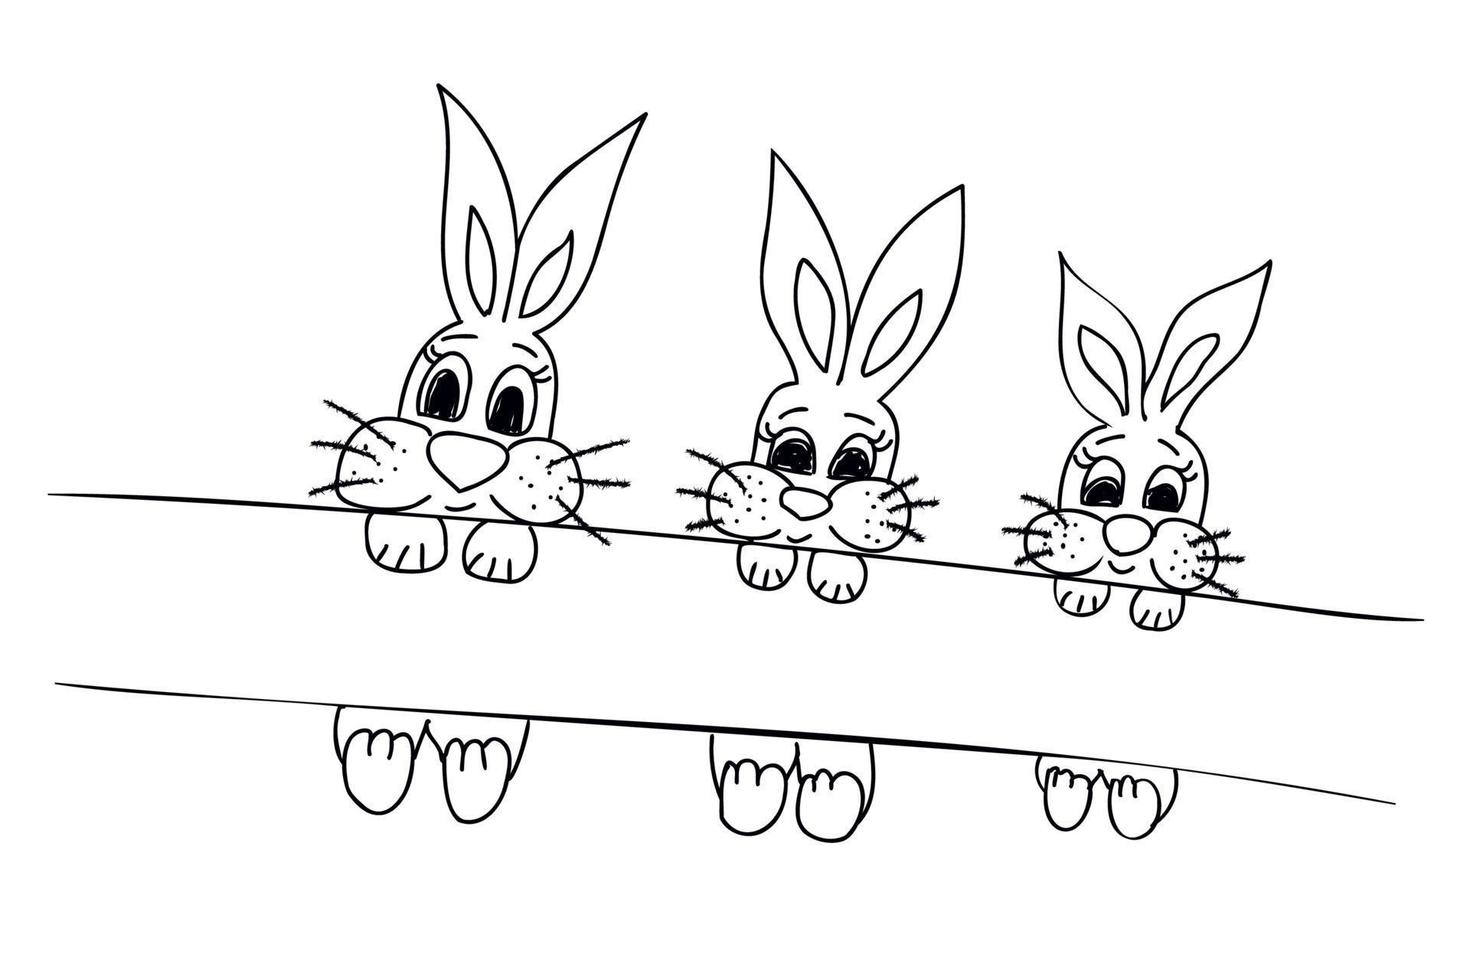 los conejos en la rama de un árbol, pintados en blanco y negro, se pueden usar para imprimir ropa, navidad, postales, etc. vector